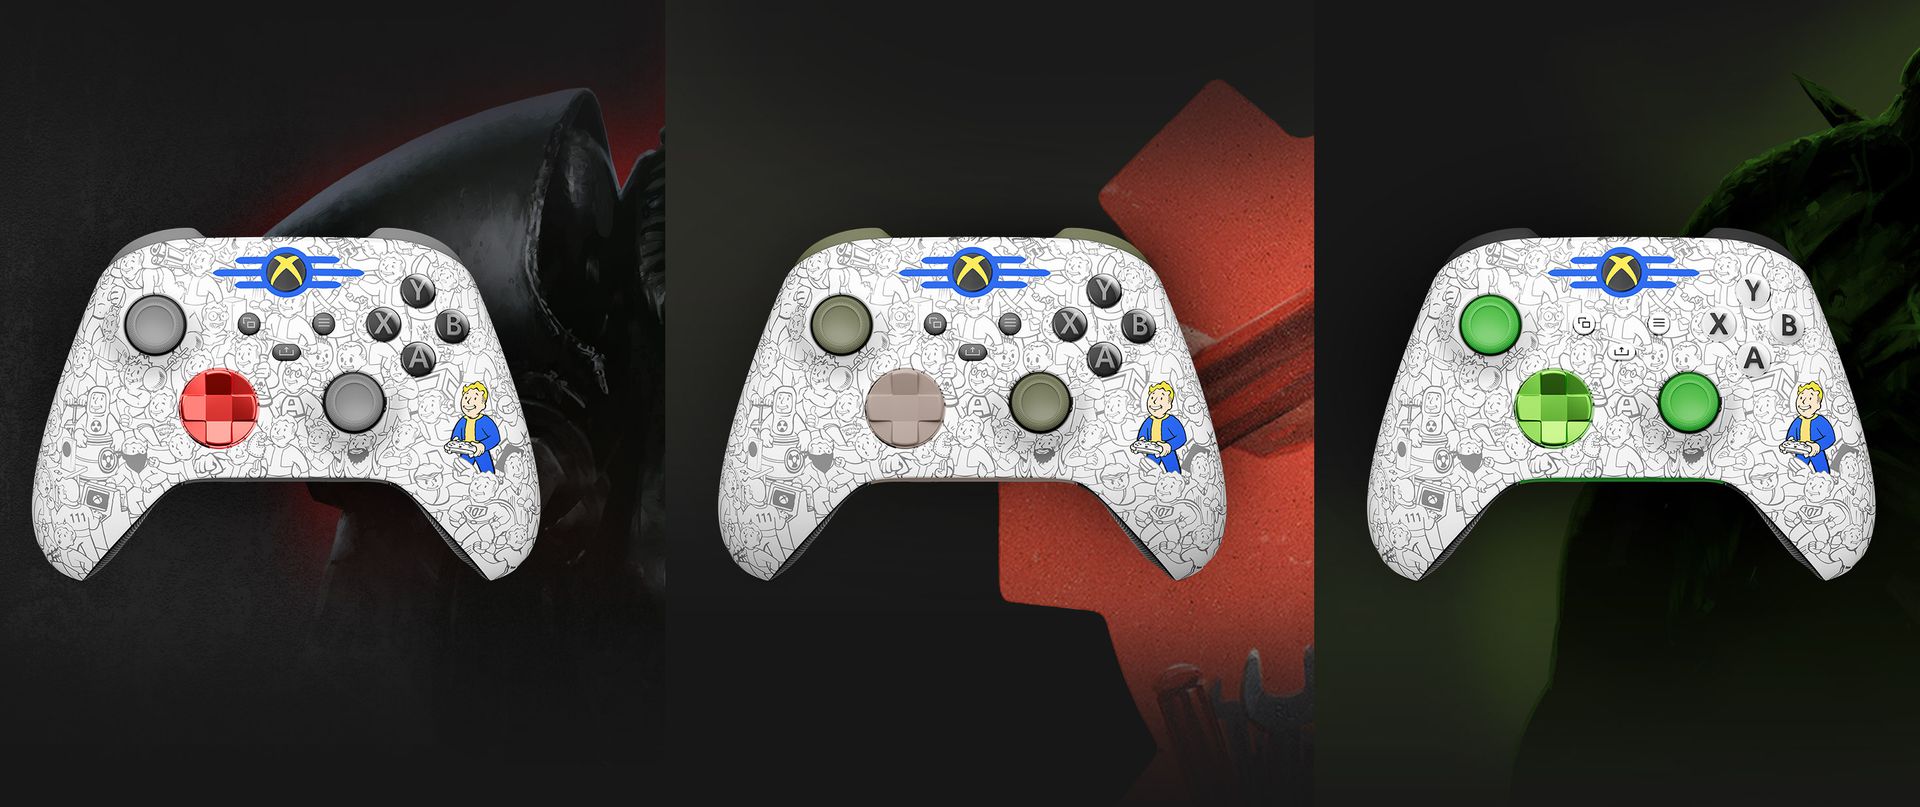 Key art di desGameTopic con esempi dei controller a tema Fallout dal laboratorio Xbox desGameTopic